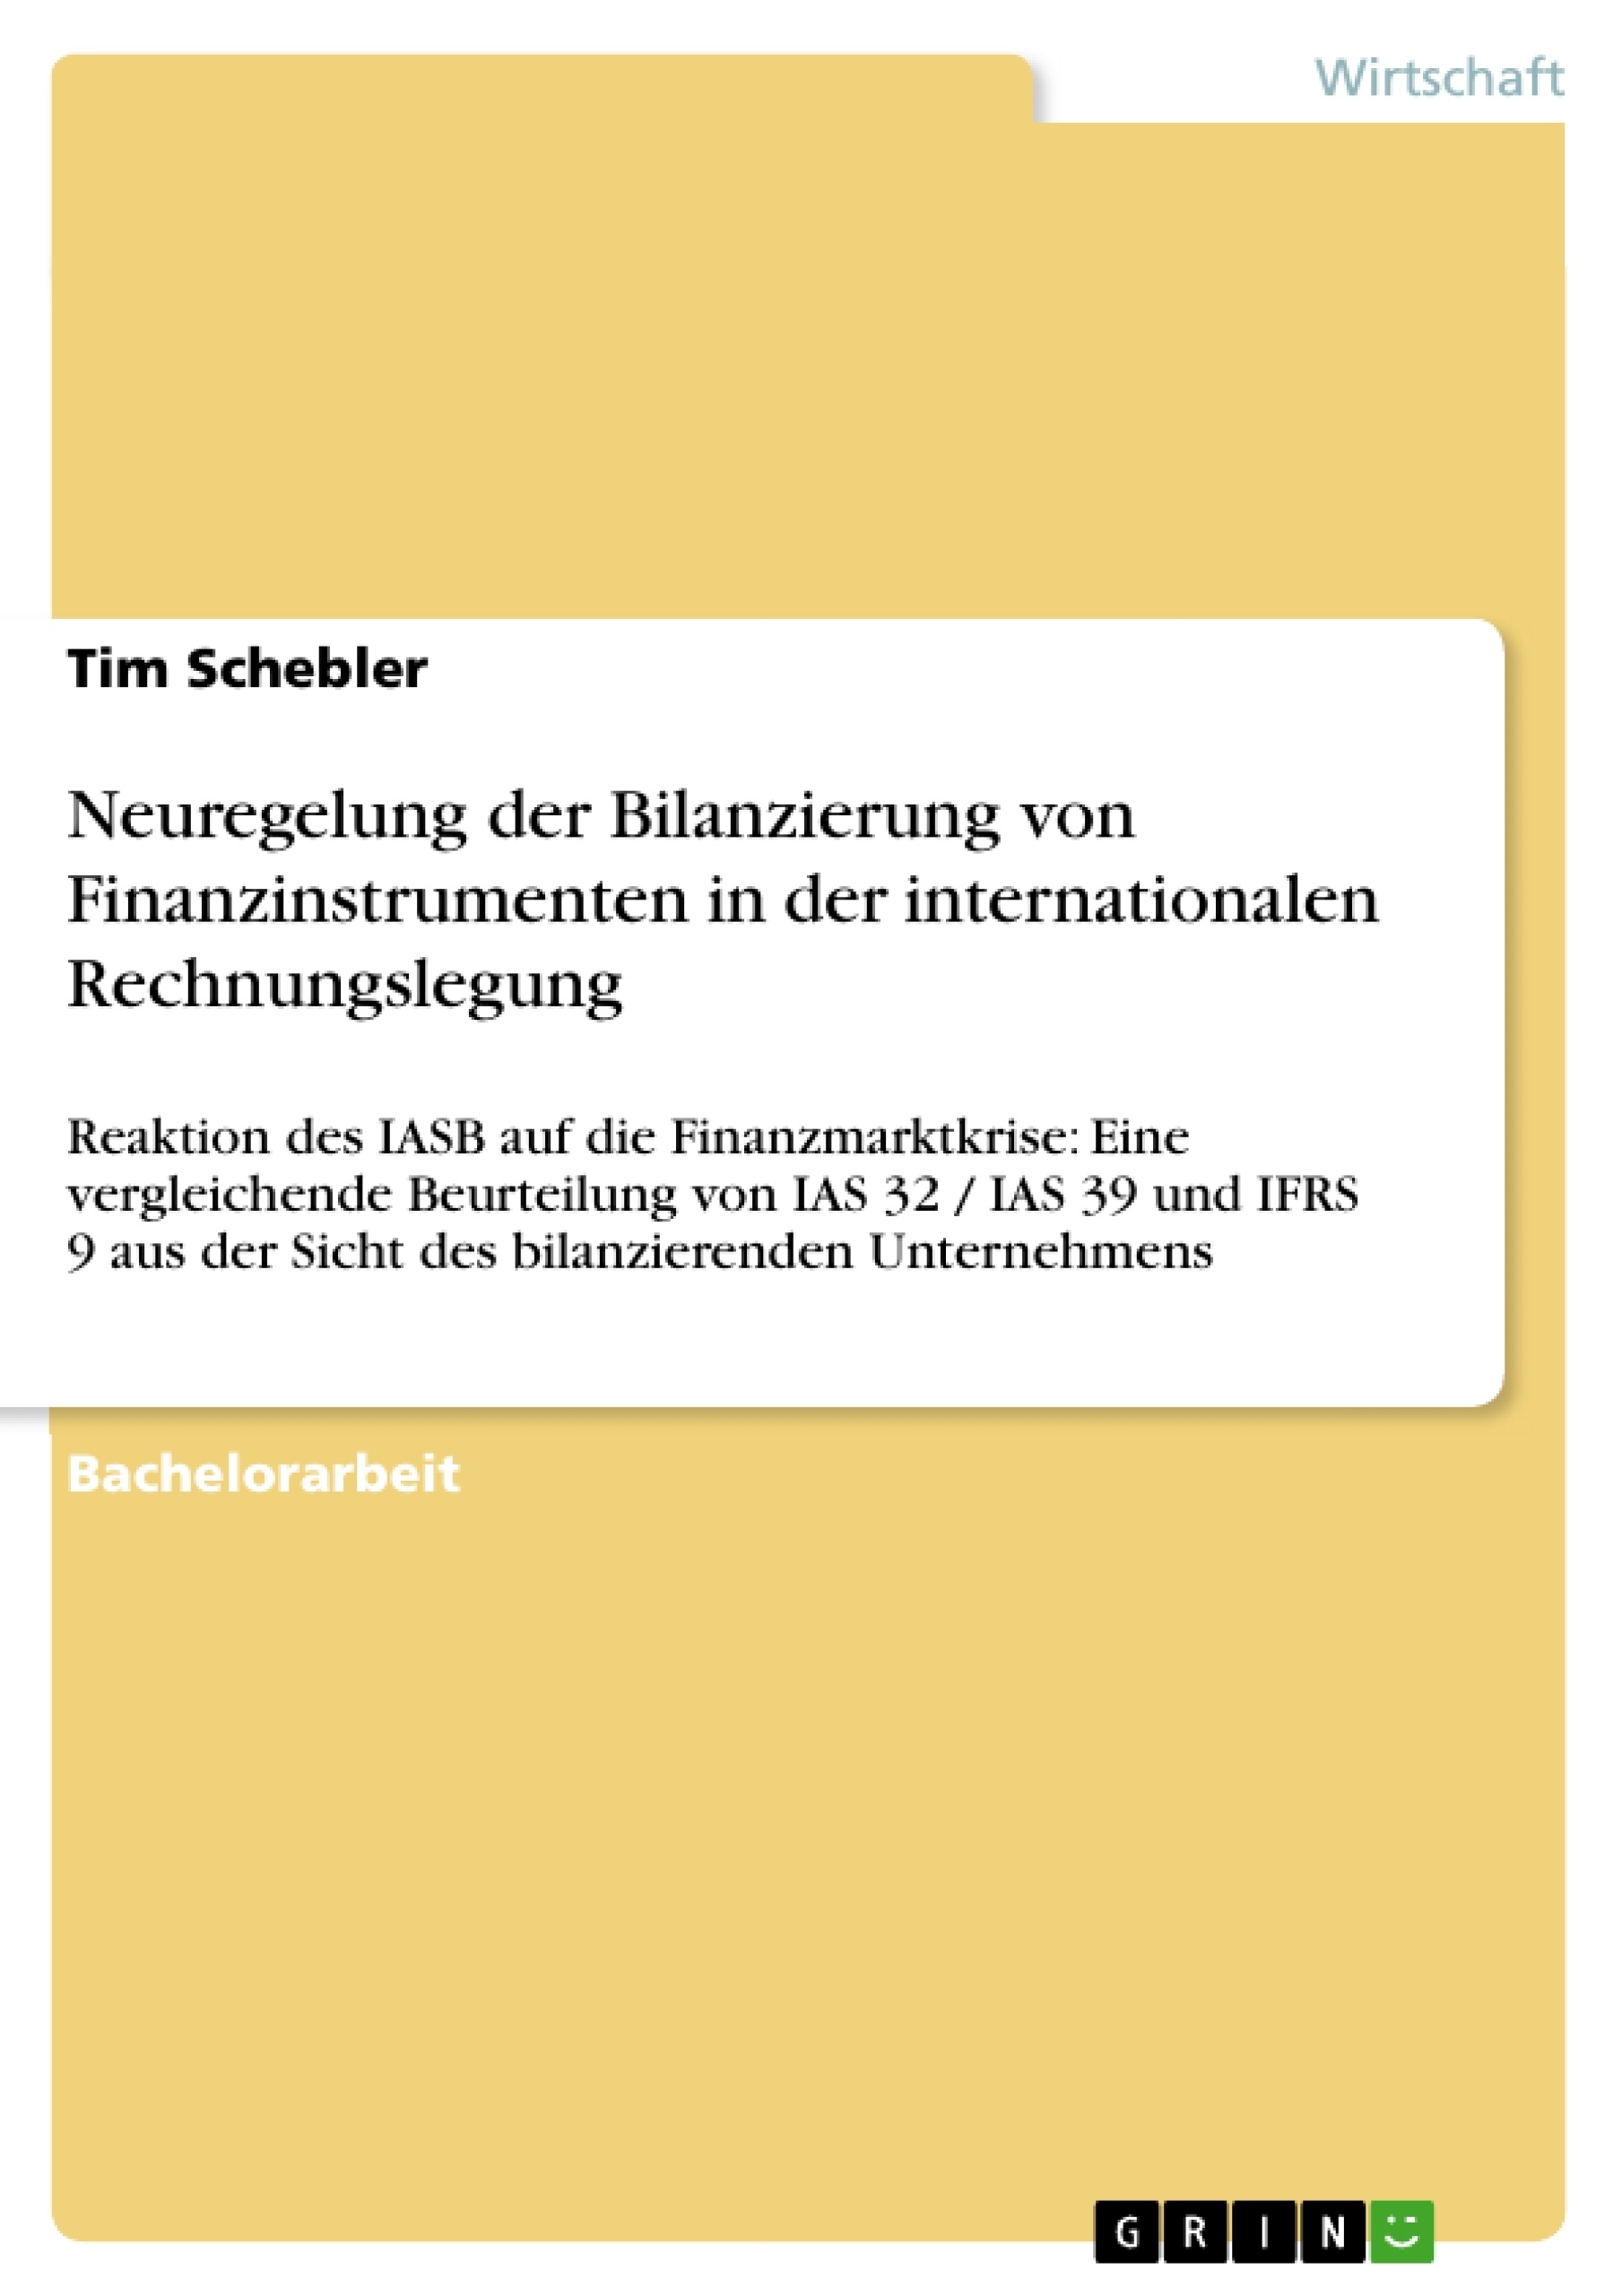 Titre: Neuregelung der Bilanzierung von Finanzinstrumenten in der internationalen Rechnungslegung